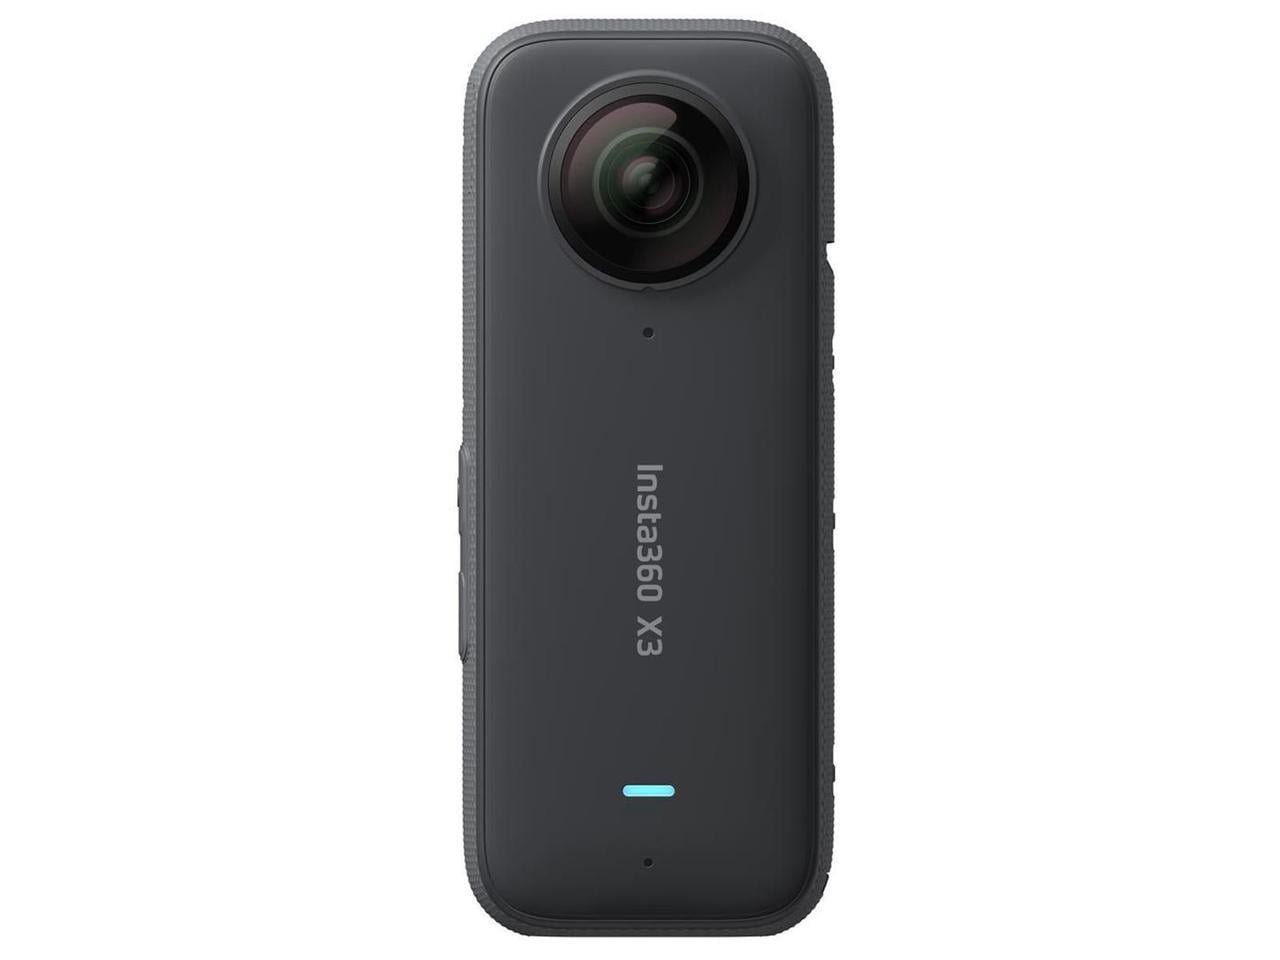 #CINSAAQ/B 360 Action Insta360 Camera X3 Pocket